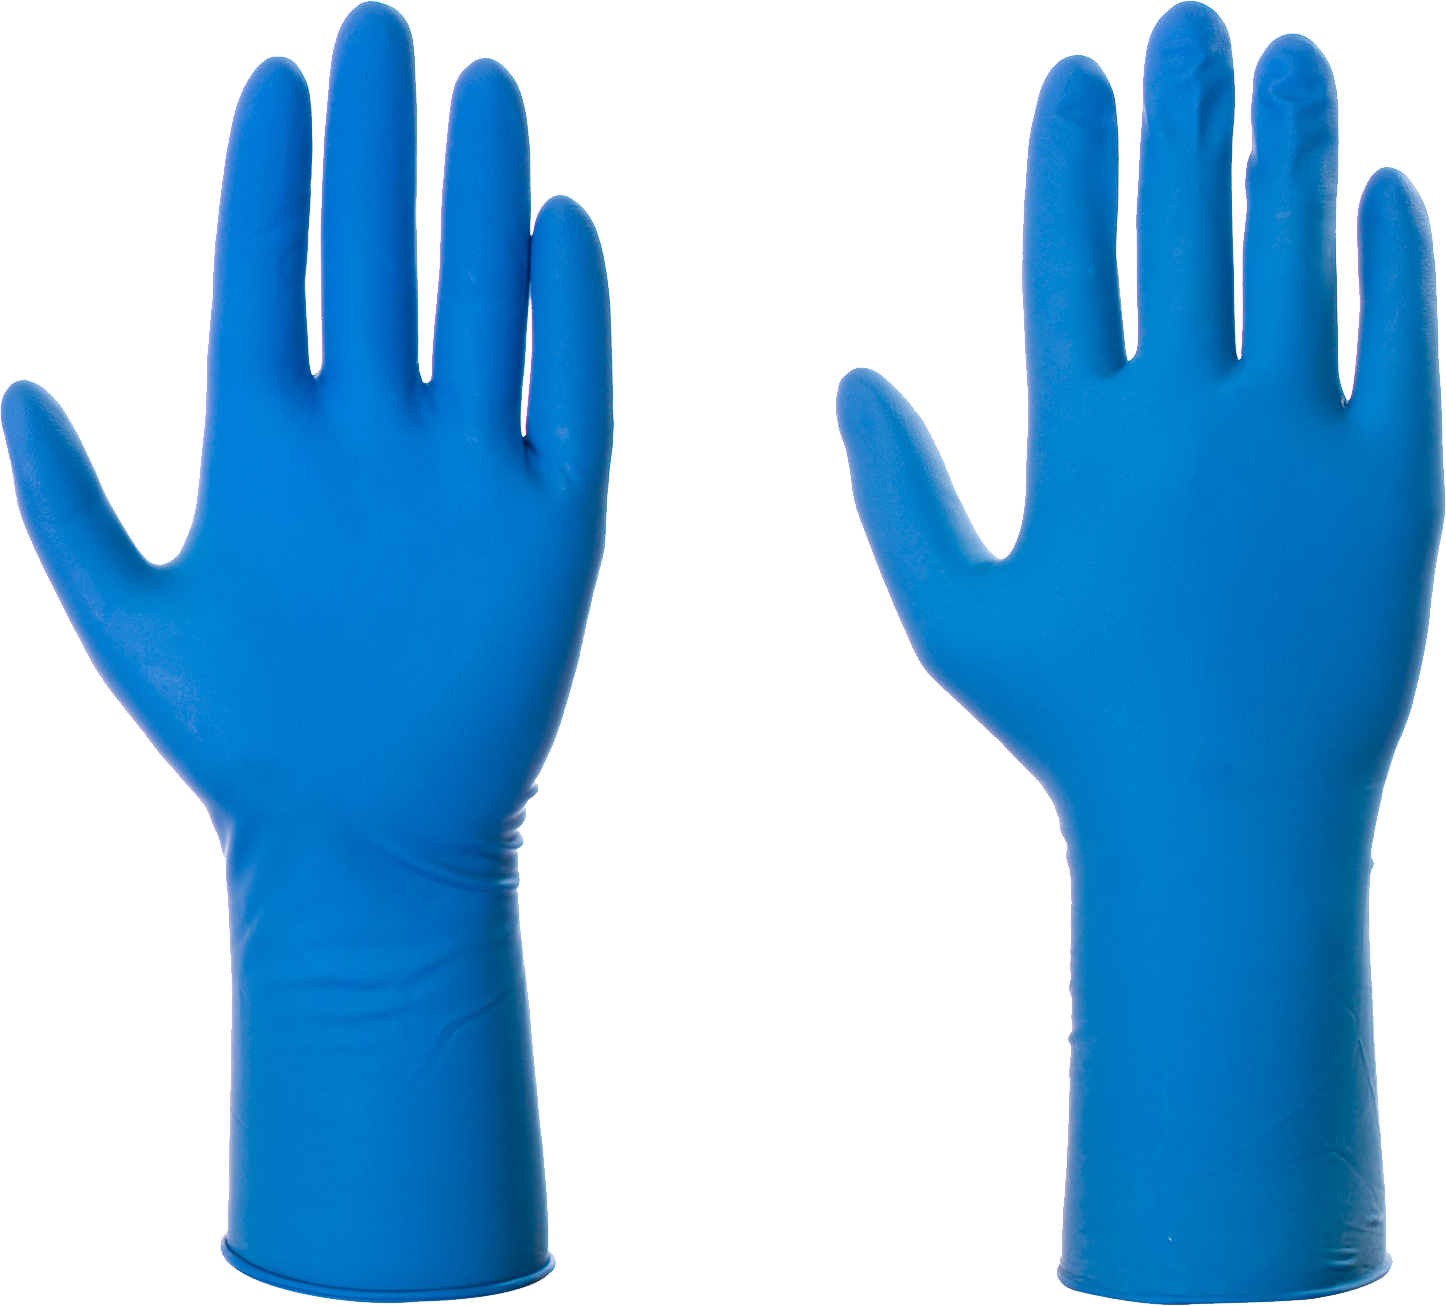 Medical Gloves PNG Images HD